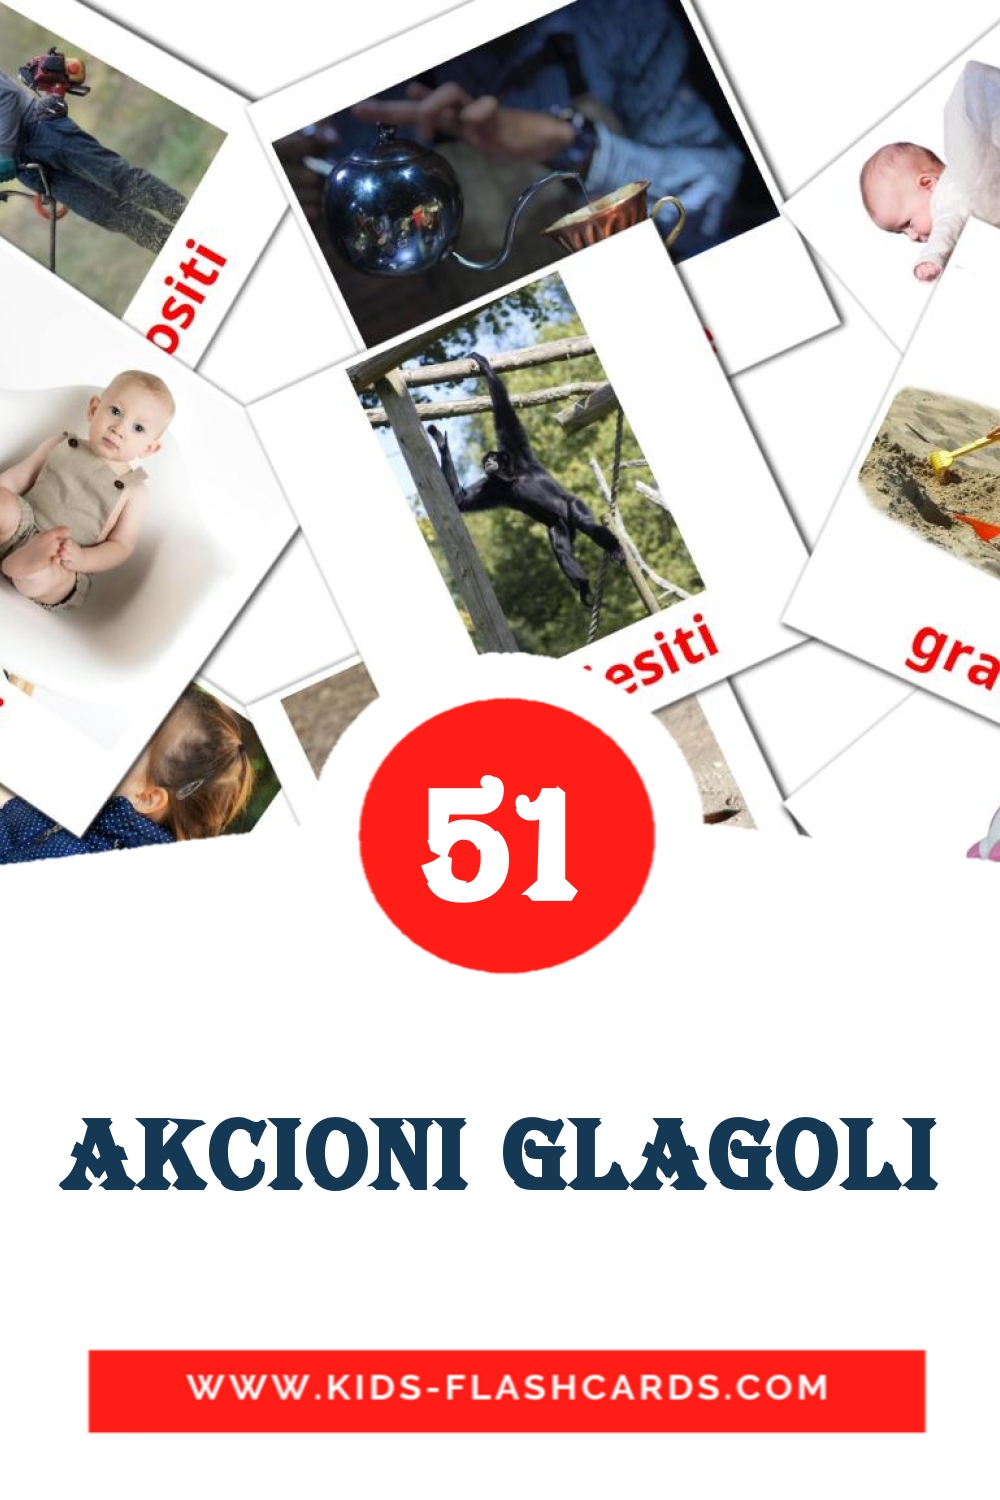 51 tarjetas didacticas de akcioni glagoli para el jardín de infancia en bosnio